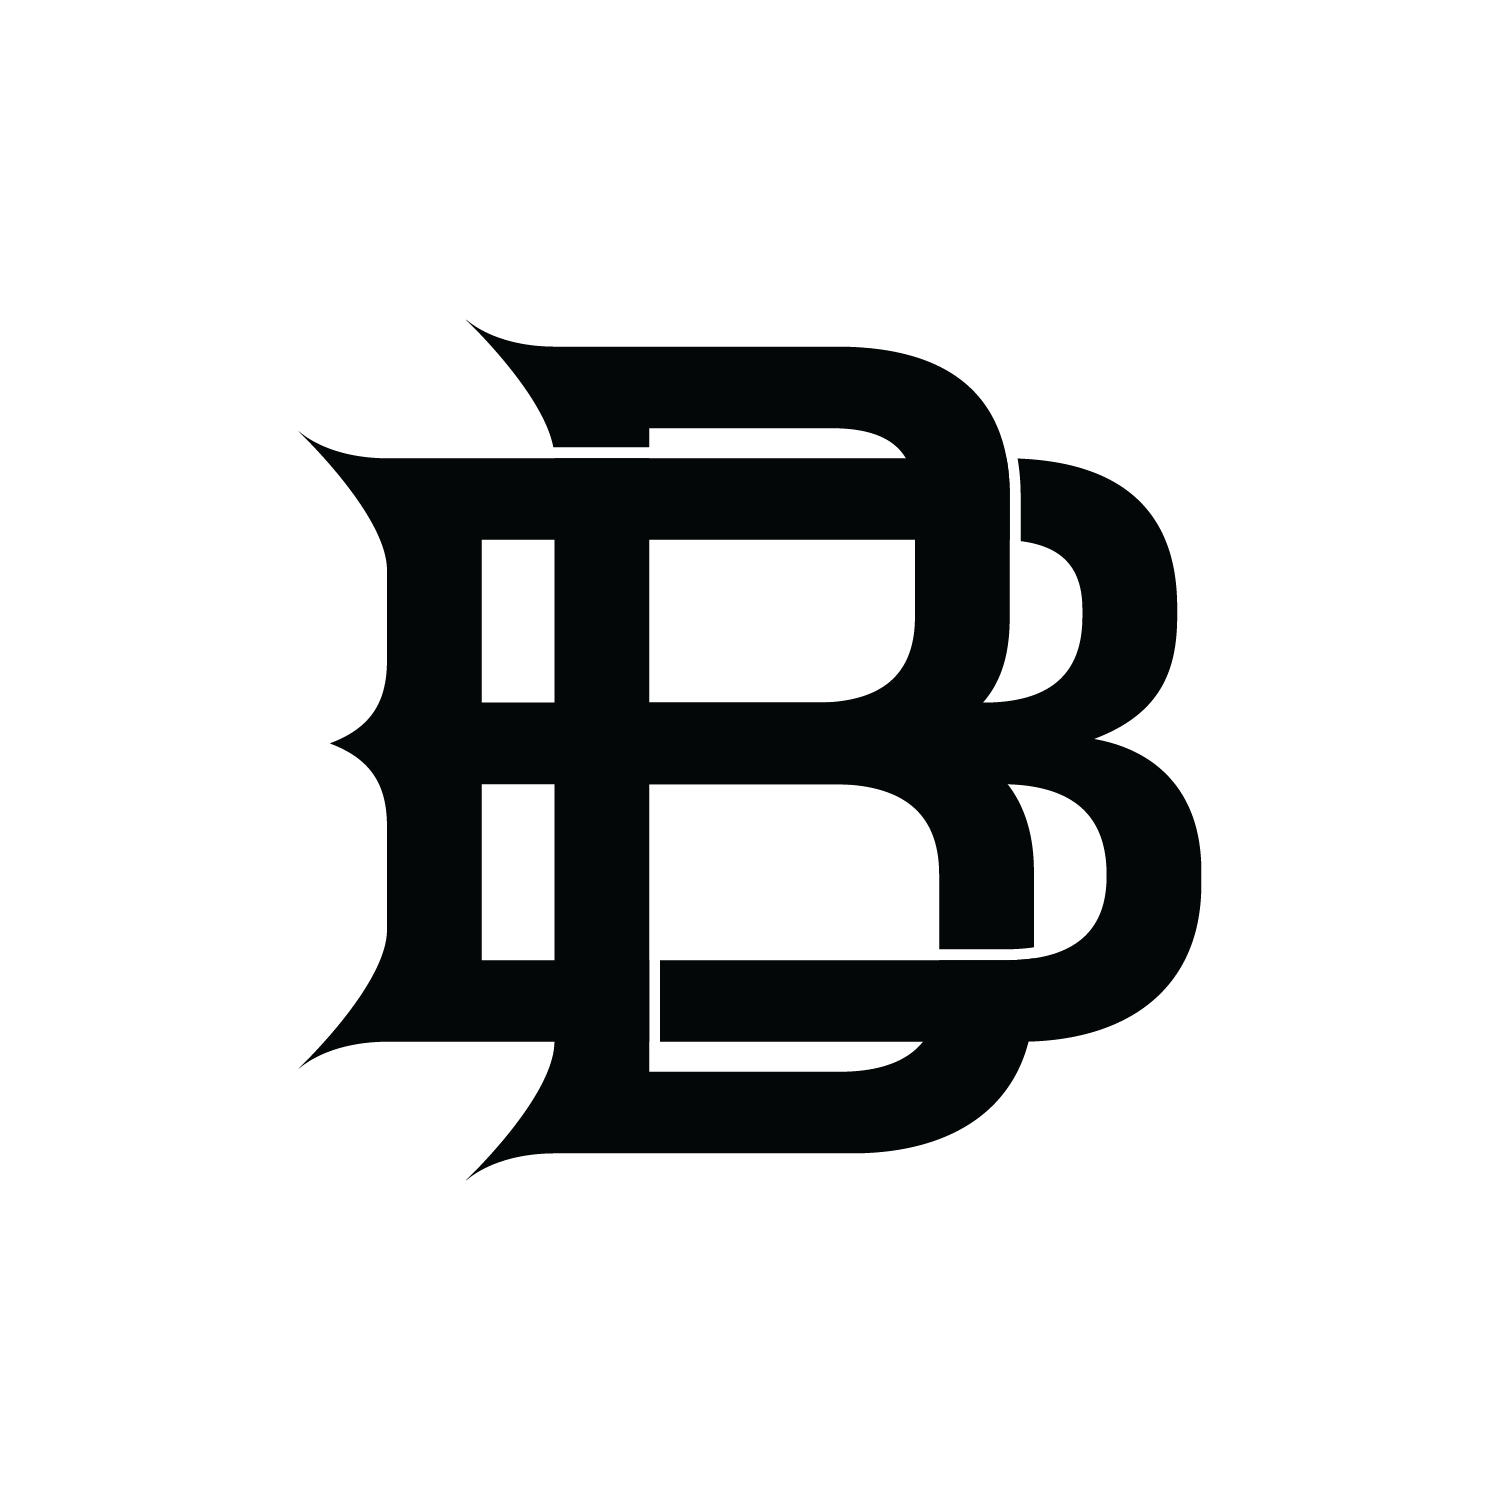 bb-logo-mark-blackonwhite-boro-born